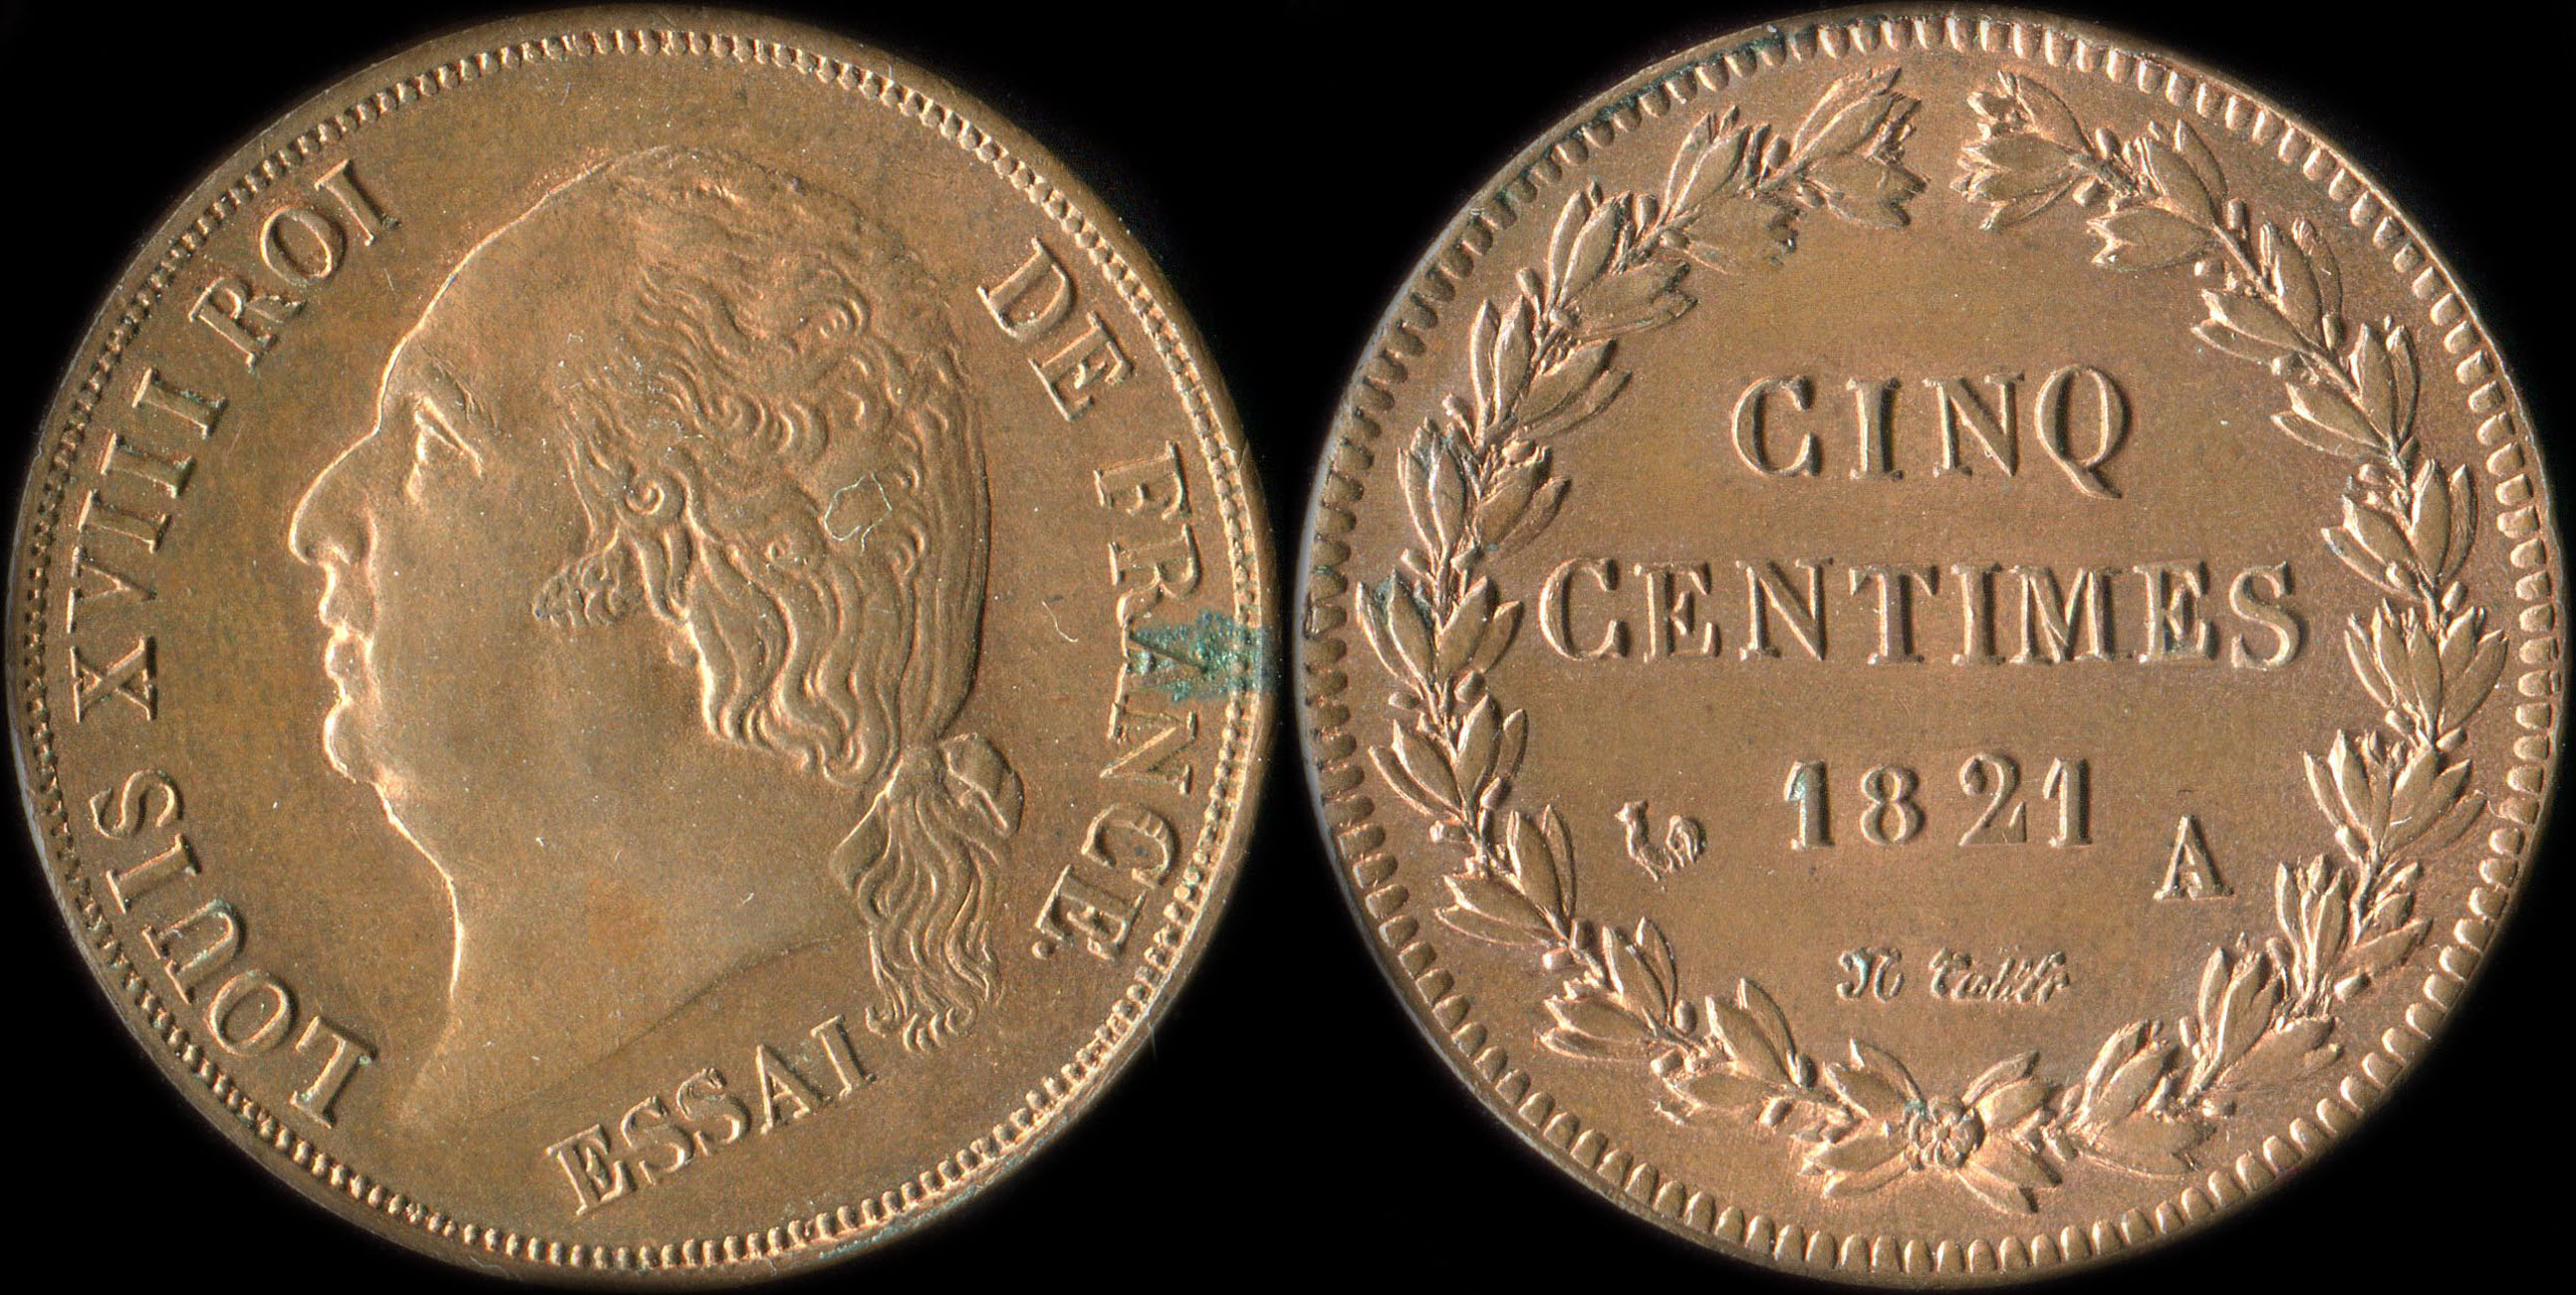 Pice d'essai 5 centimes Louis XVIII - Roi de France - 1821A - Cuivre - 8,56 grammes - 27,0 mm - tranche lisse - graveur: Tiolier